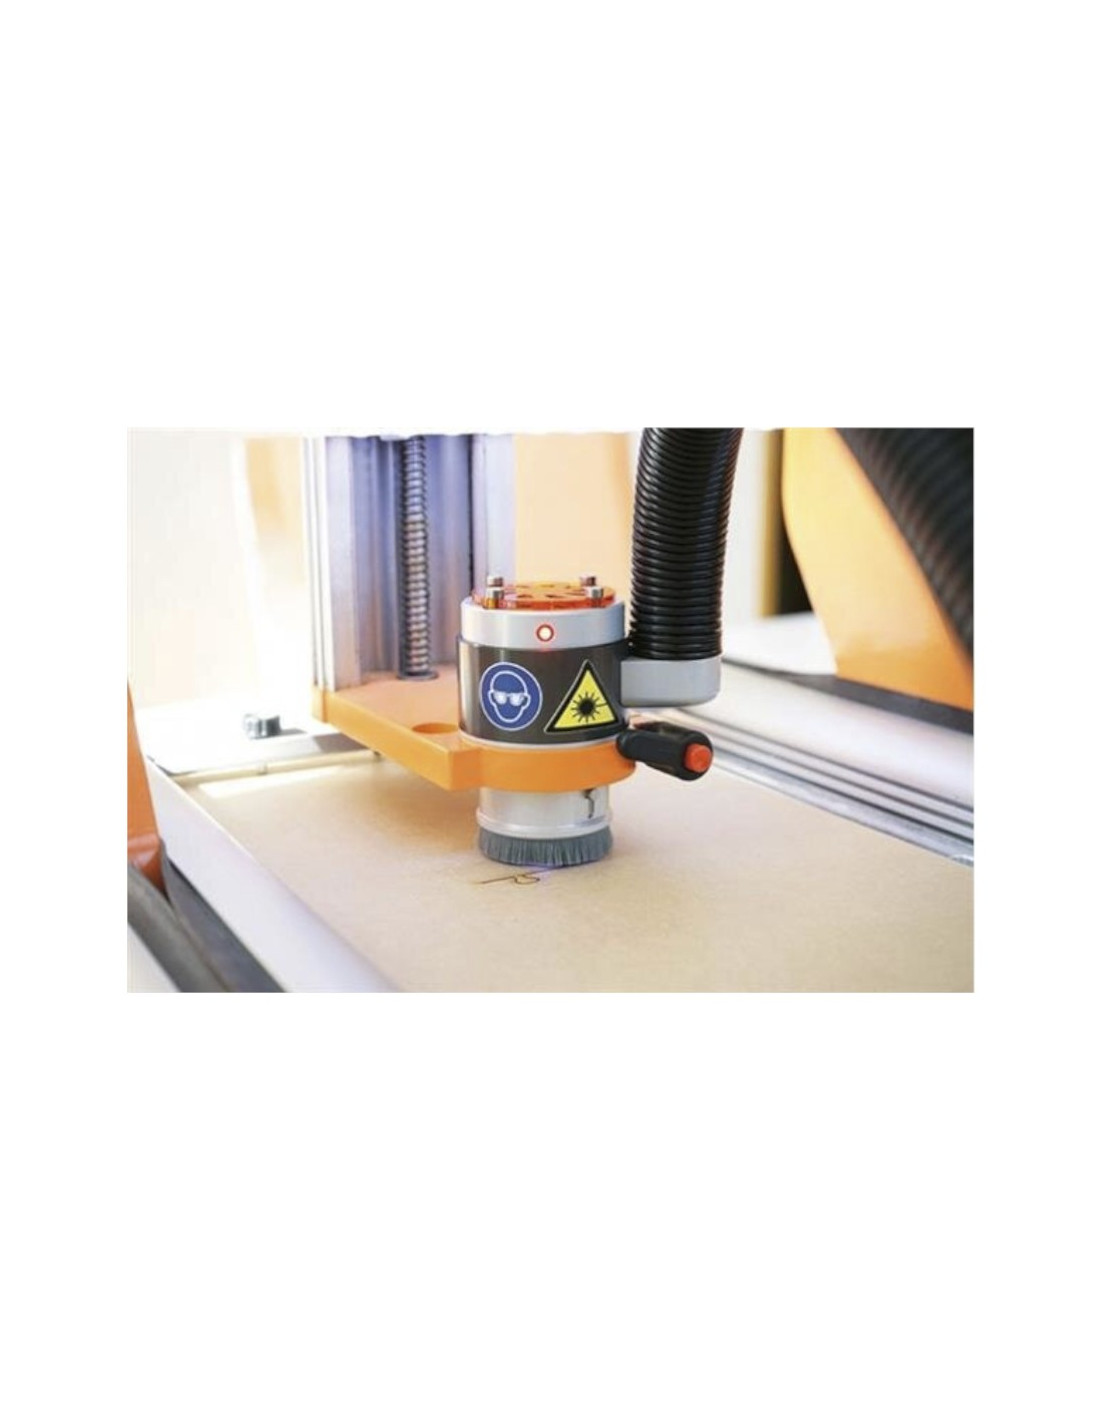 DL445 laser engraver for Stepcraft milling machine